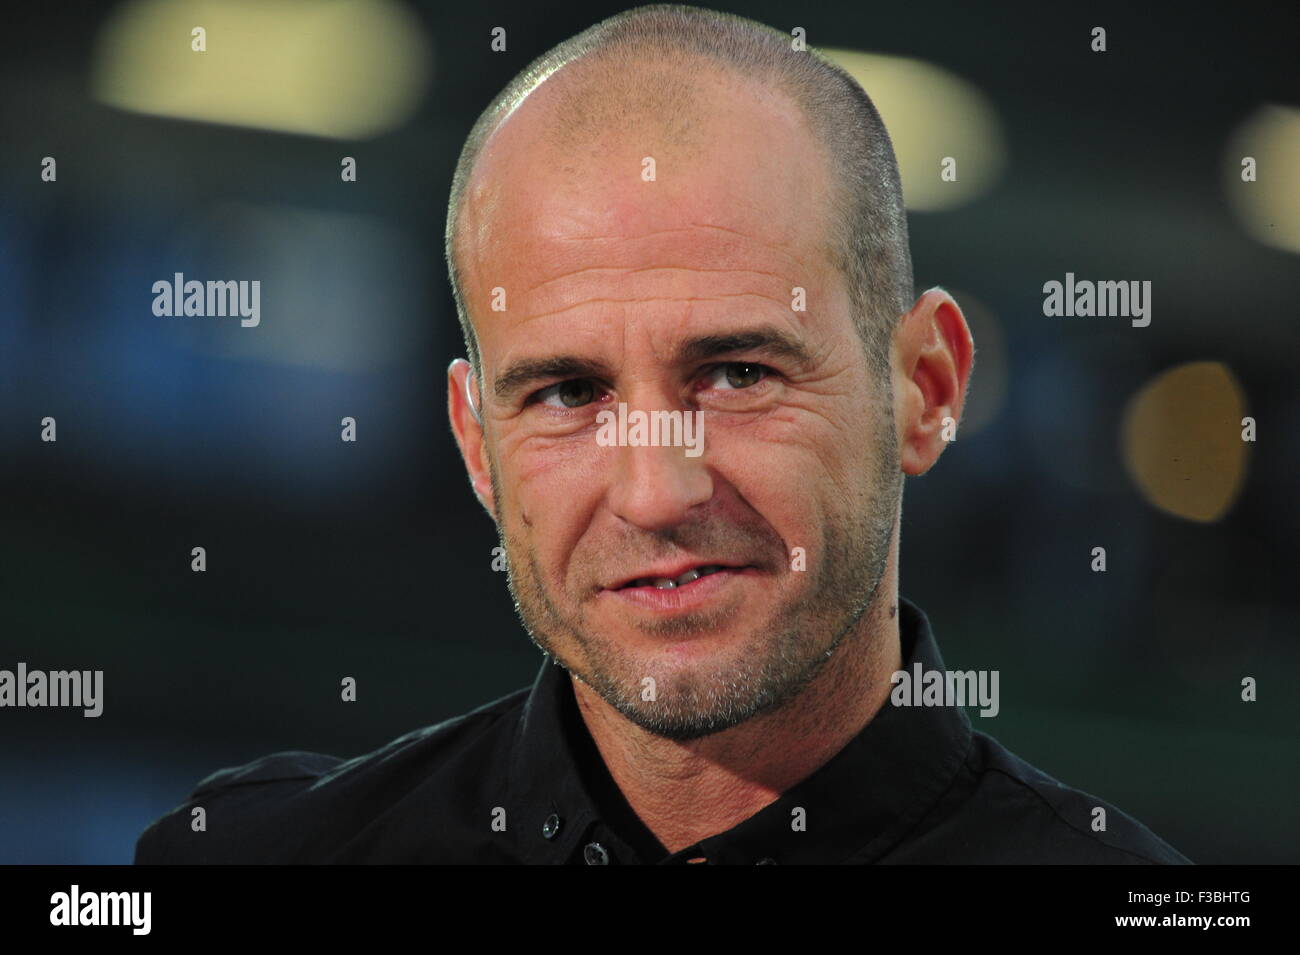 Mehmet Scholl im Interview, DFB-Pokal, Millerntor-Stadion, Hamburg, Deutschland. Editorial use only. Stock Photo